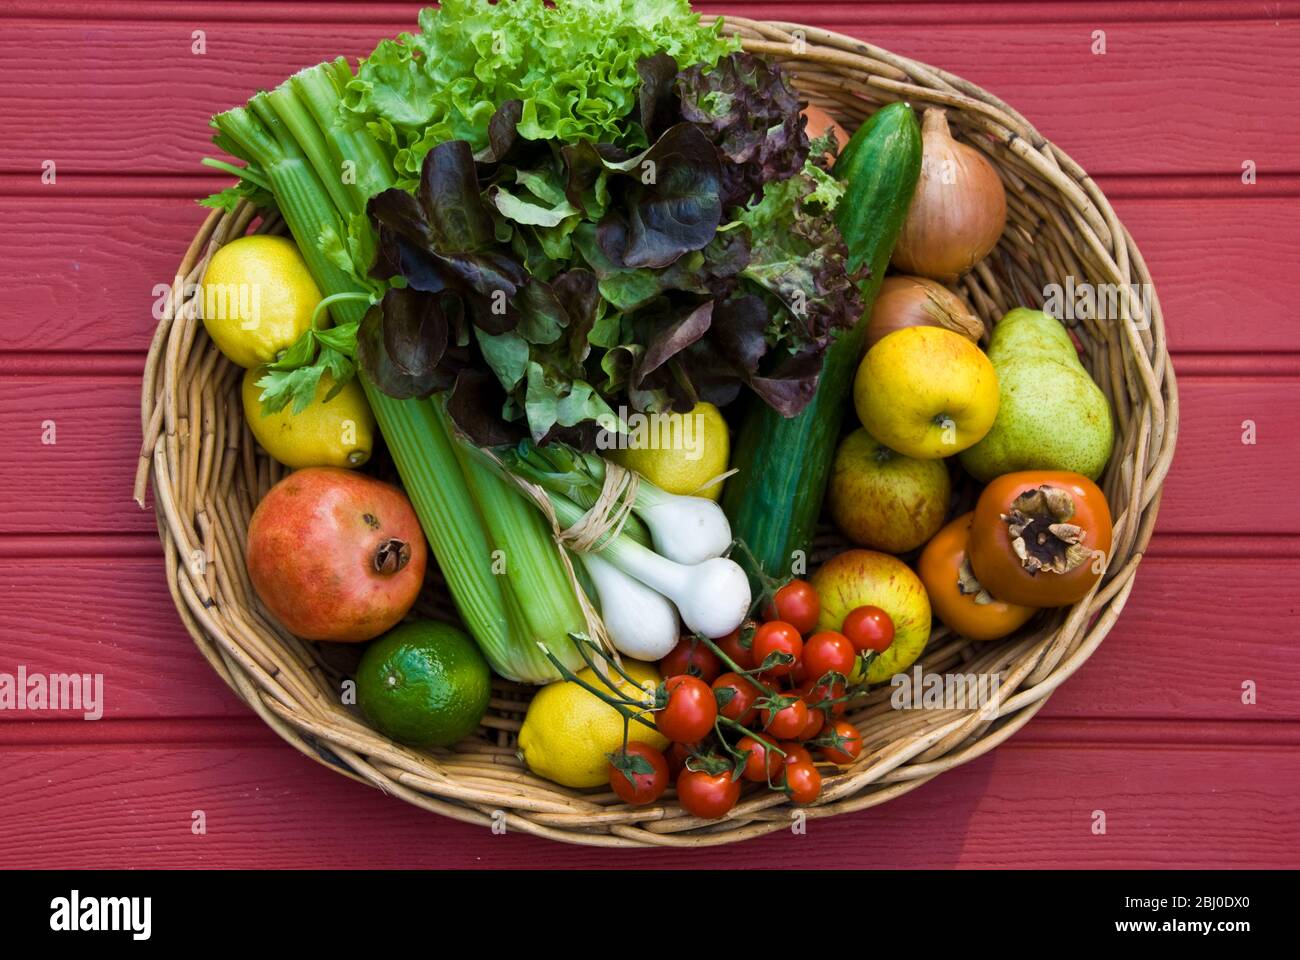 Korb mit frischem Obst und Gemüse auf roter Oberfläche - Stockfoto